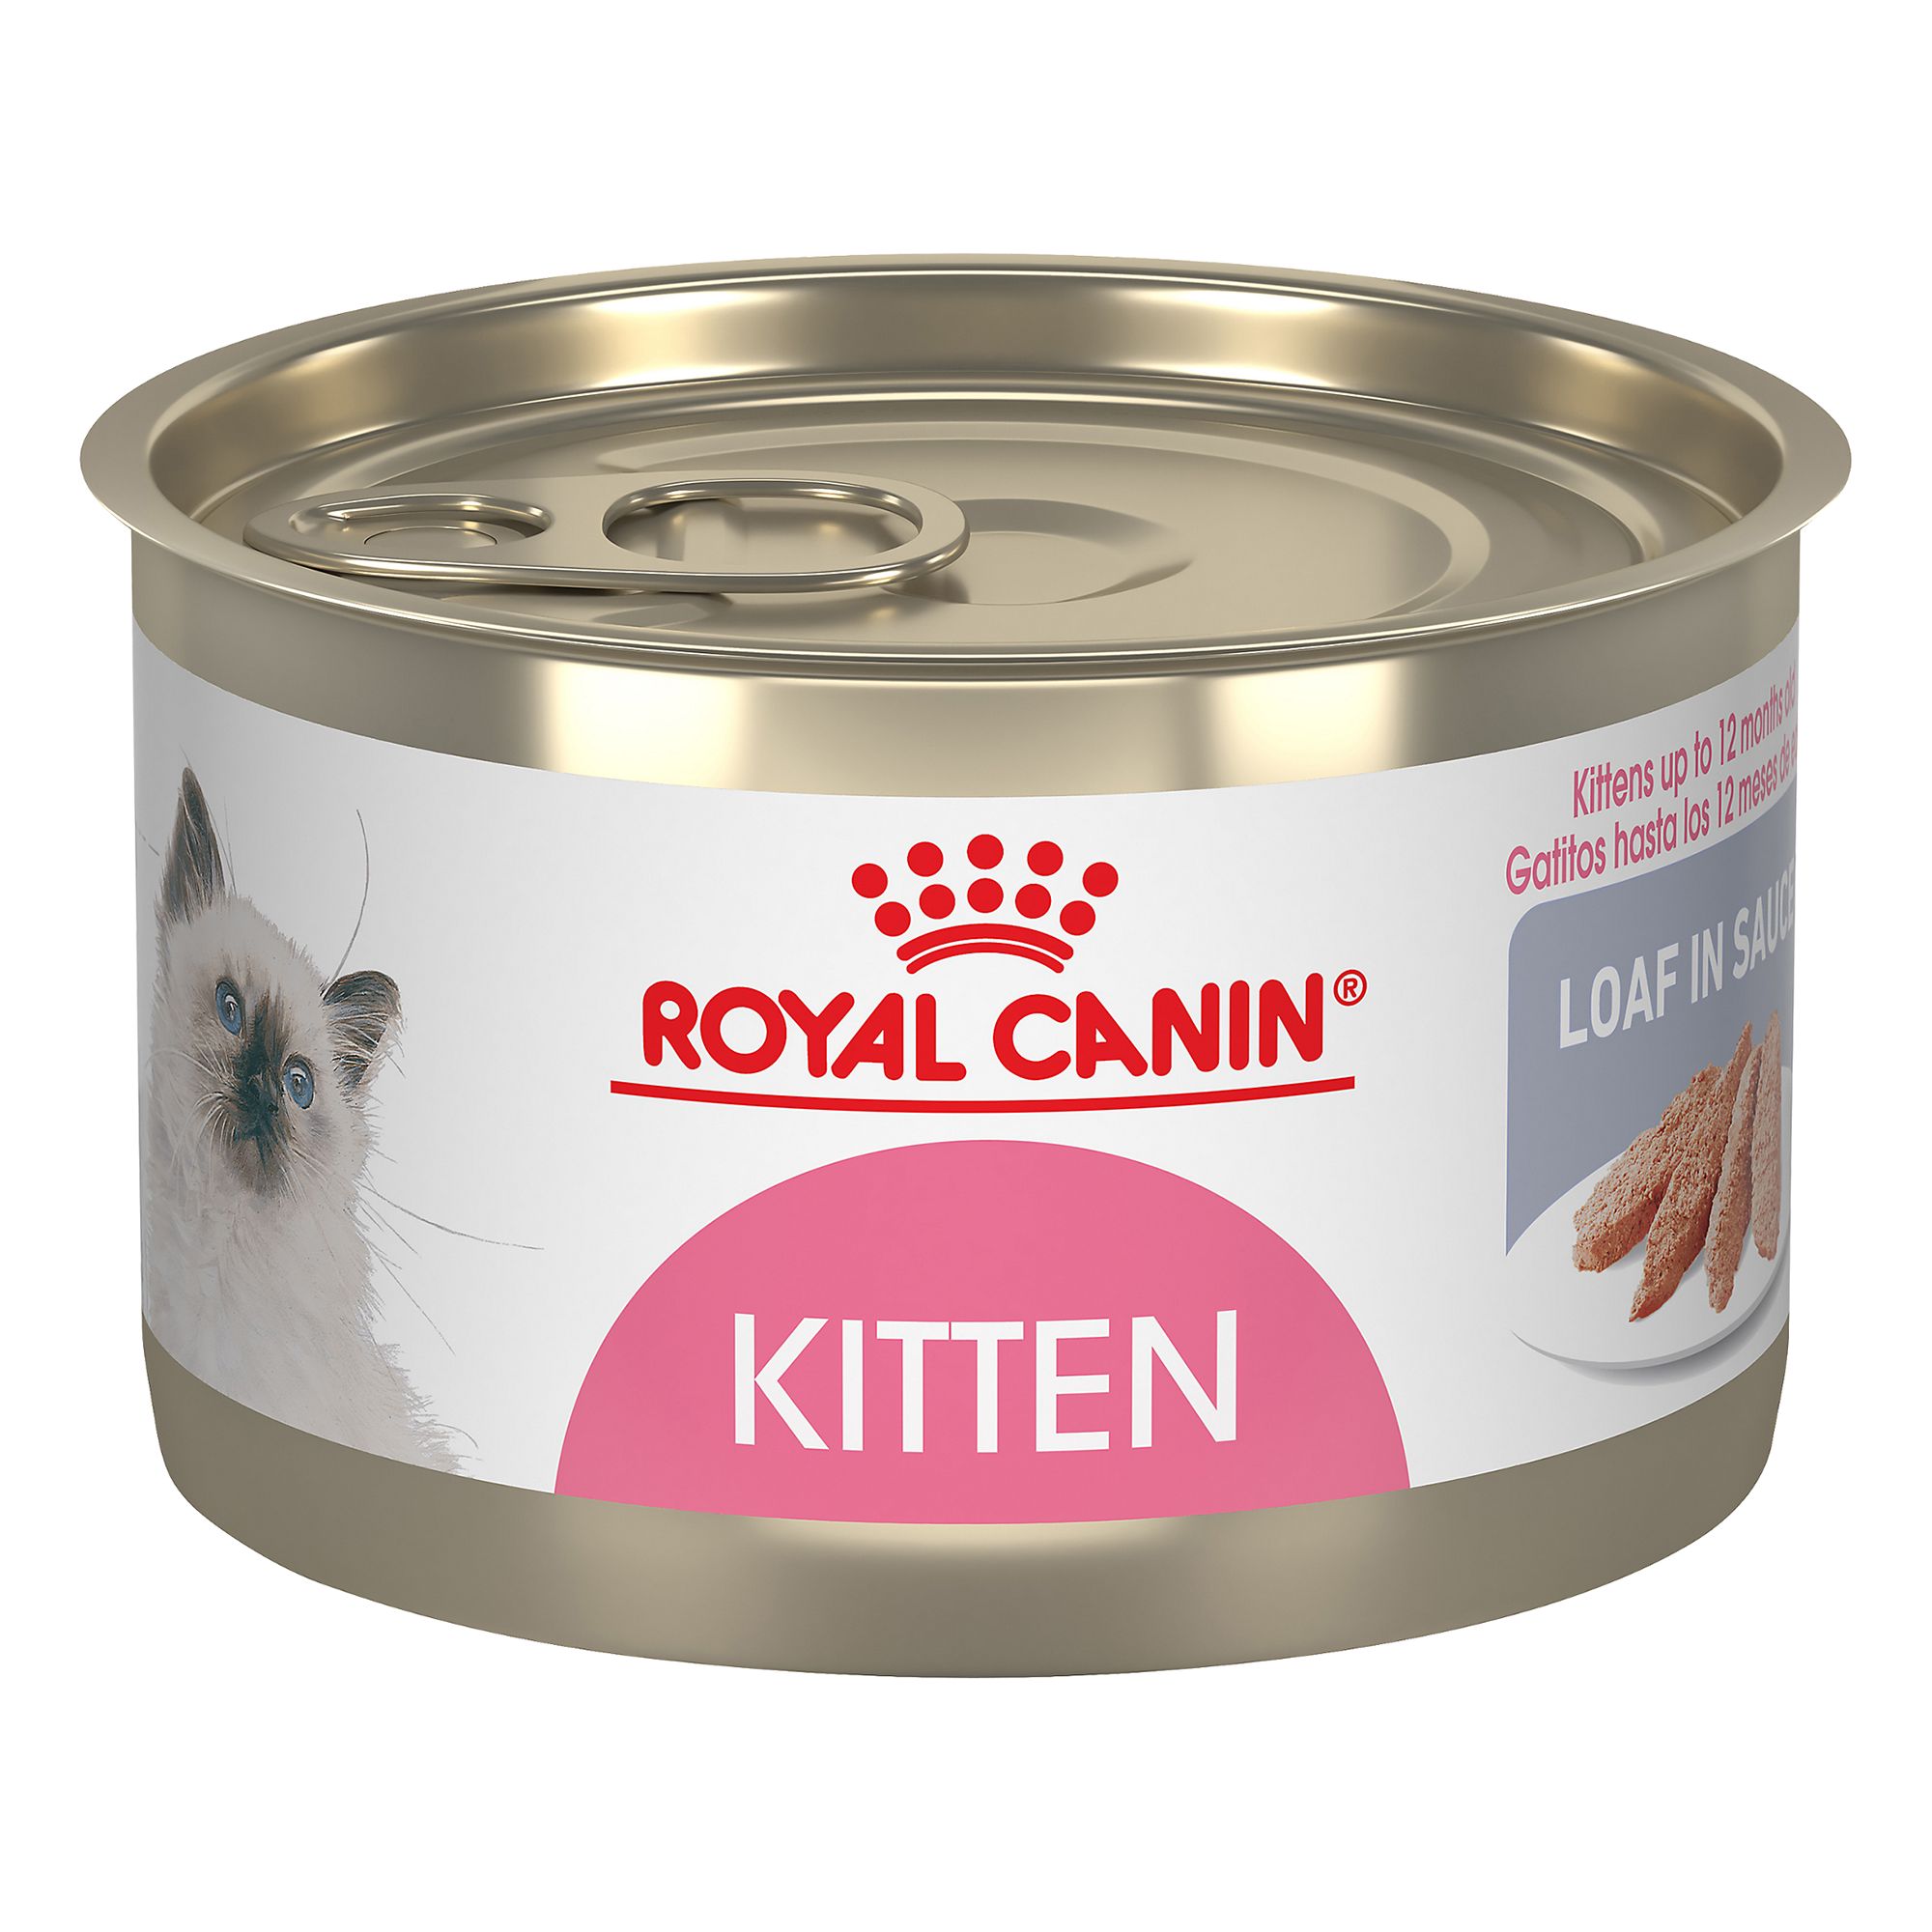 Royal Canin Fibre Response Cat Food